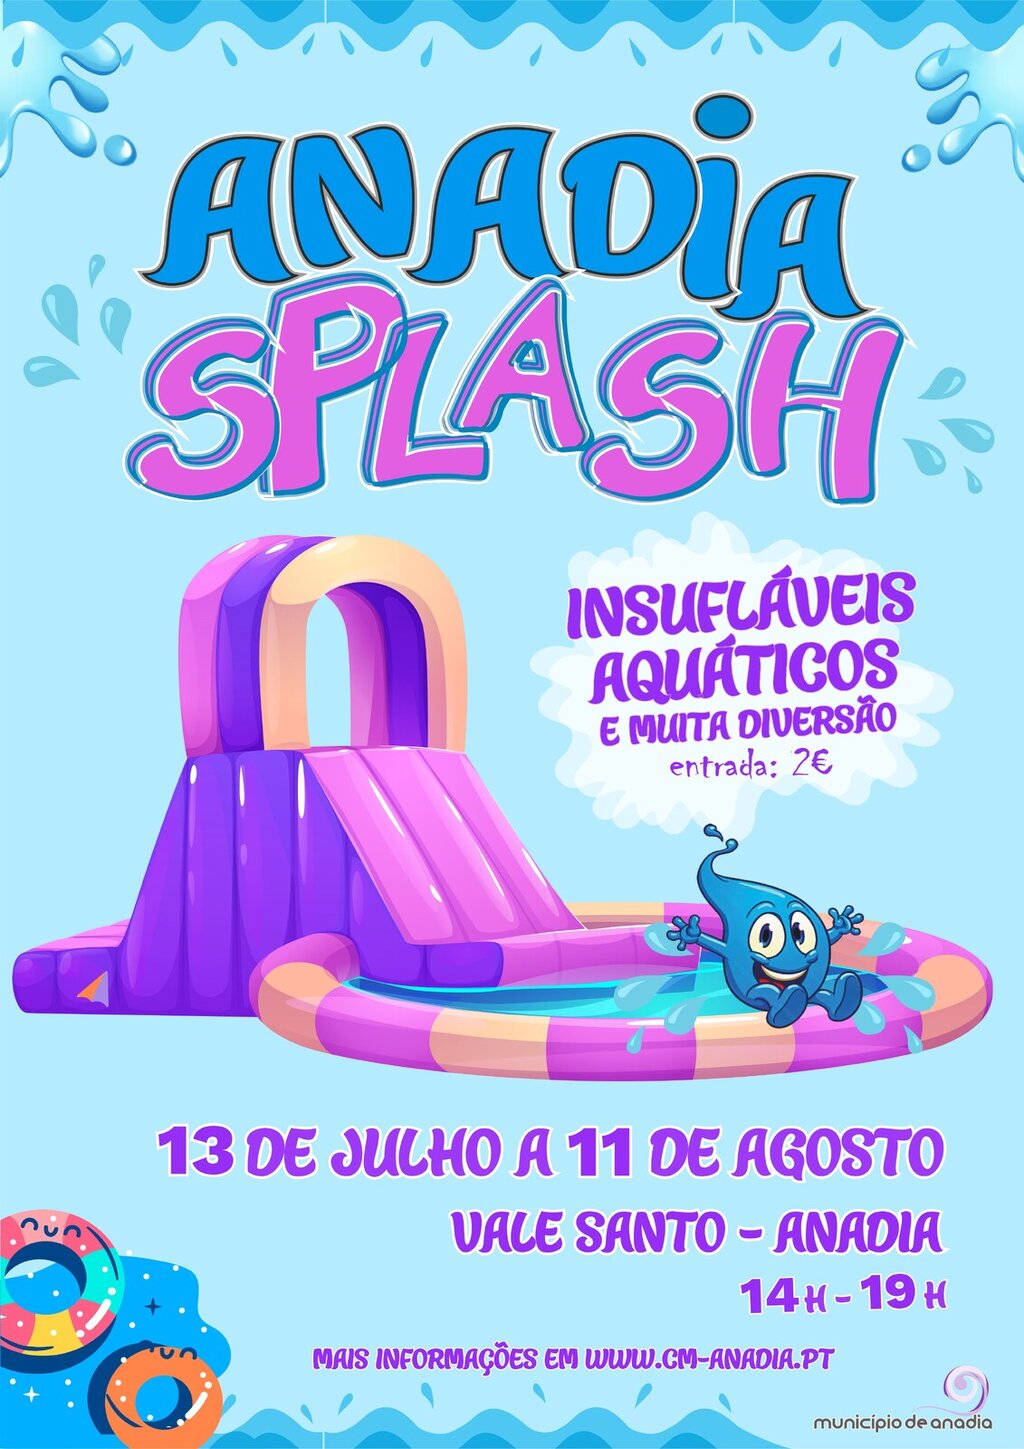 Anadia Splash - Insufláveis Aquáticos